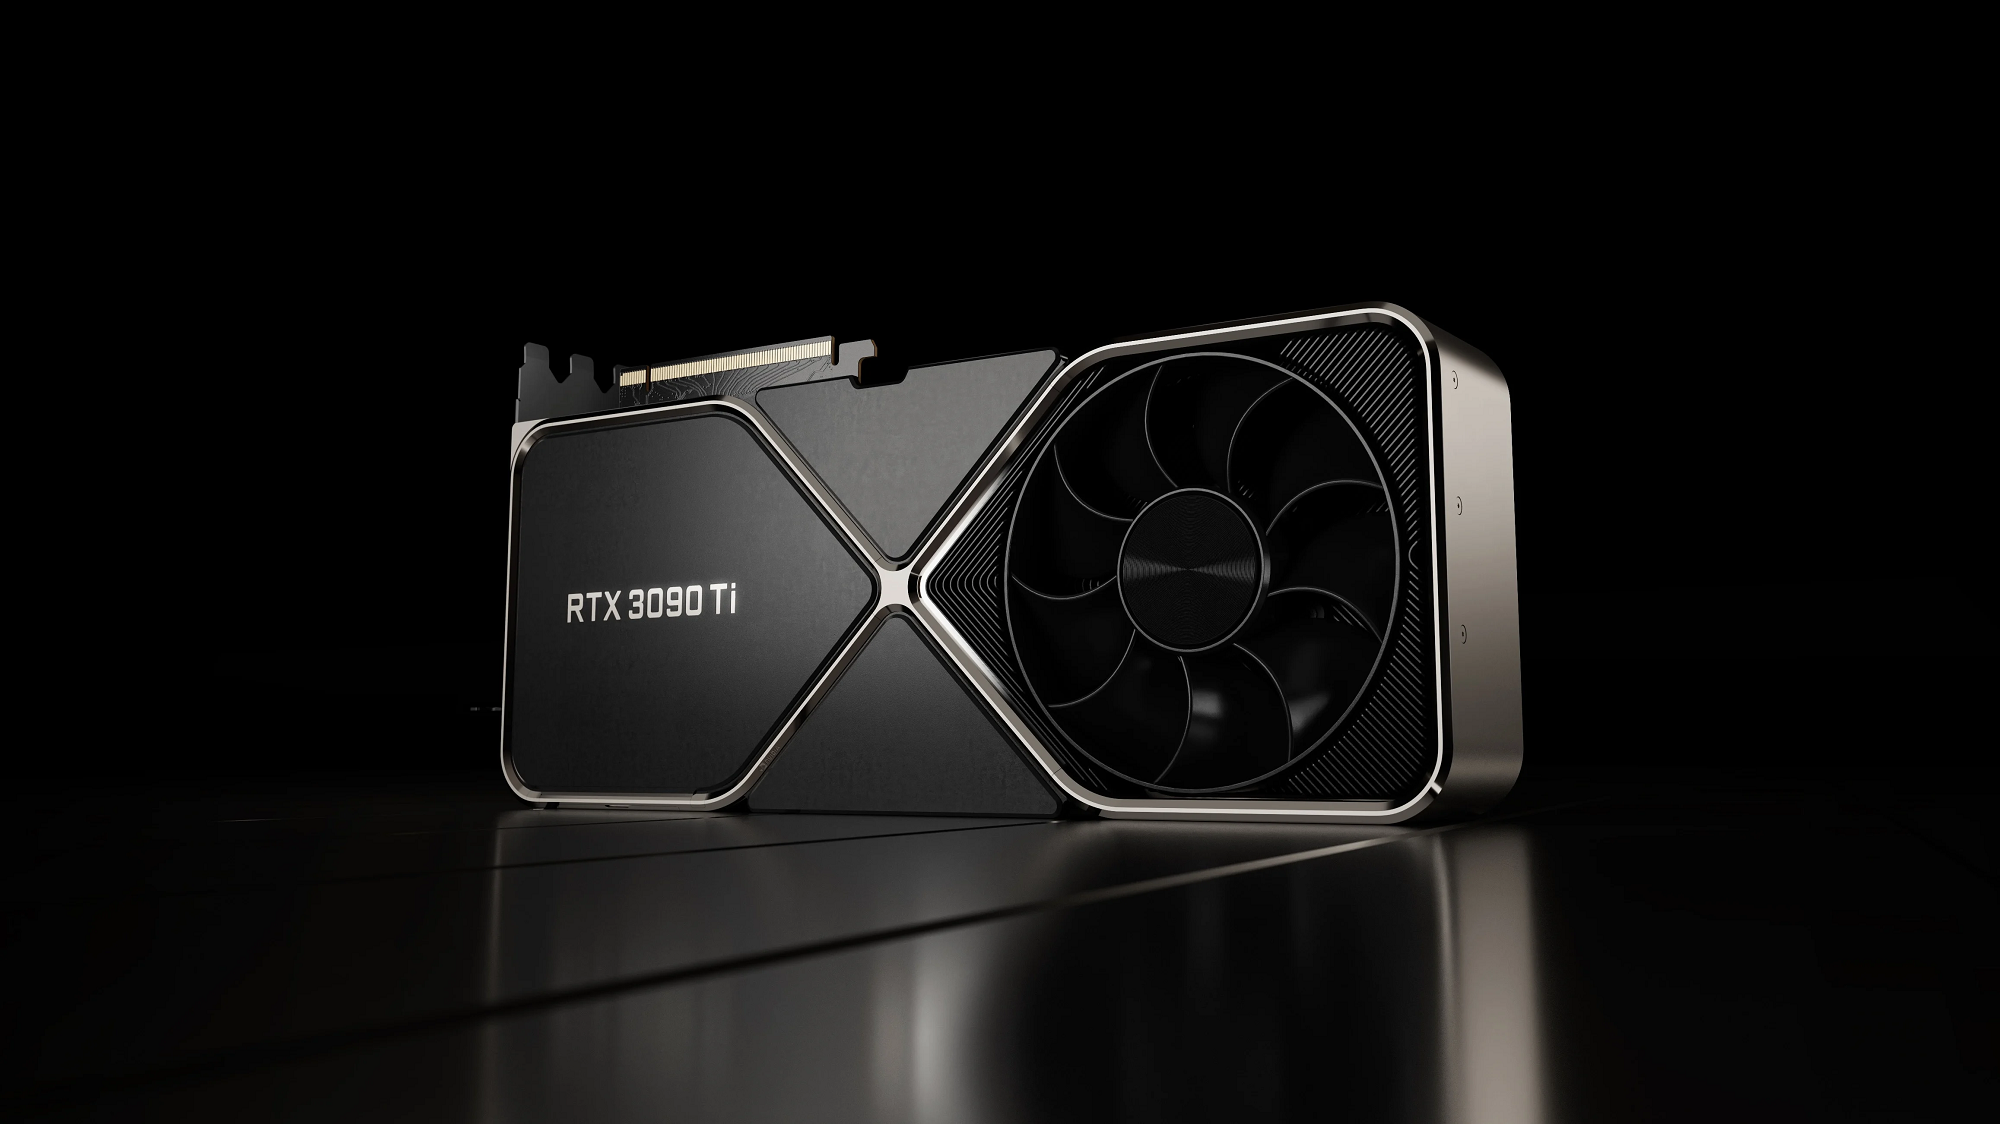 W USA karta graficzna NVIDIA GeForce RTX 3090 Ti nagle zaczęła sprzedawać się za 1600 USD, a zalecana cena to 2000 USD